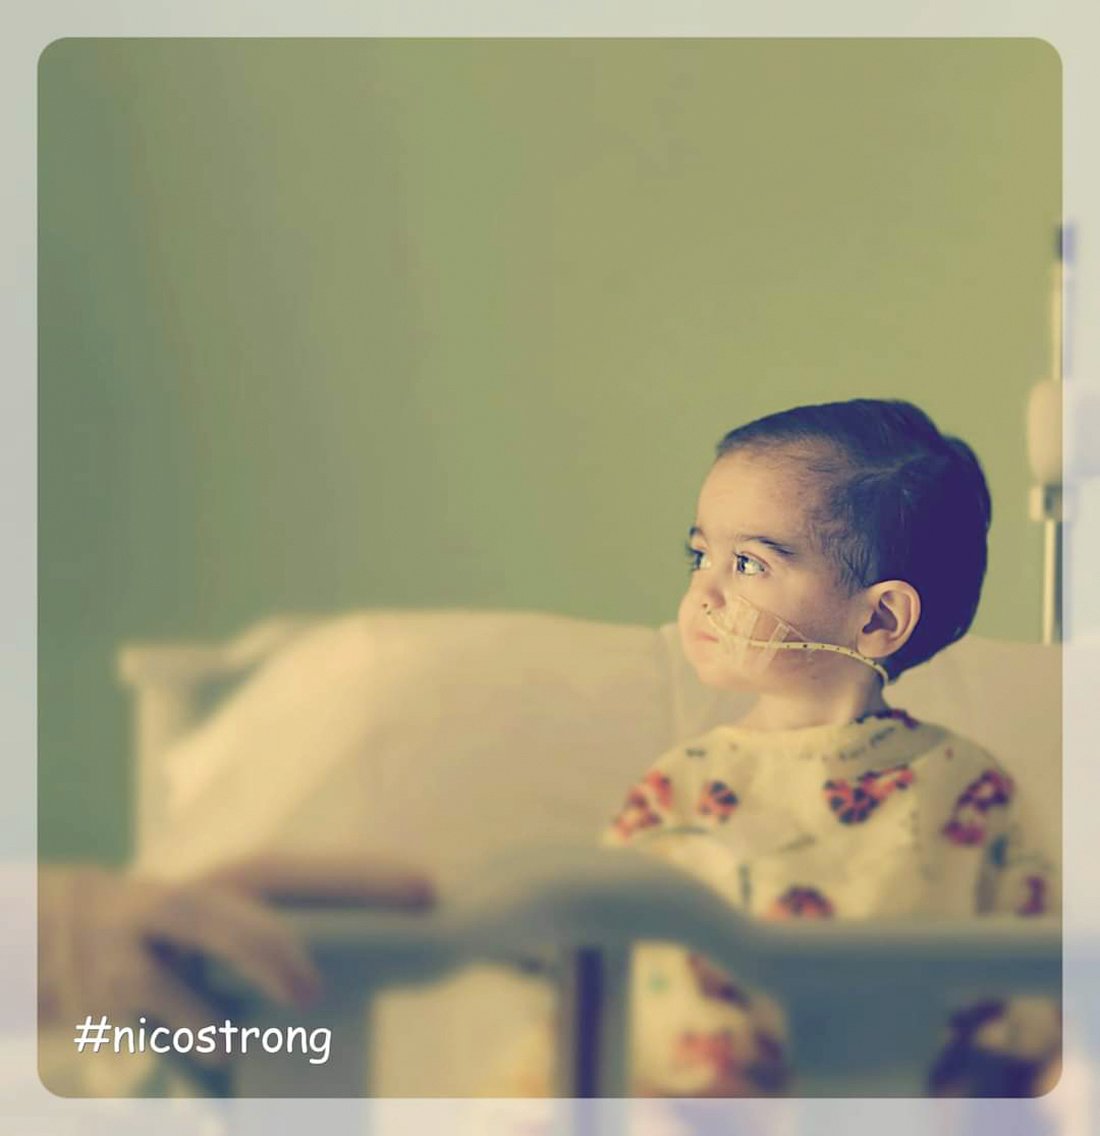 IN MEMORY OF NICO: Nico at Boston Children’s Hospital in 2015.